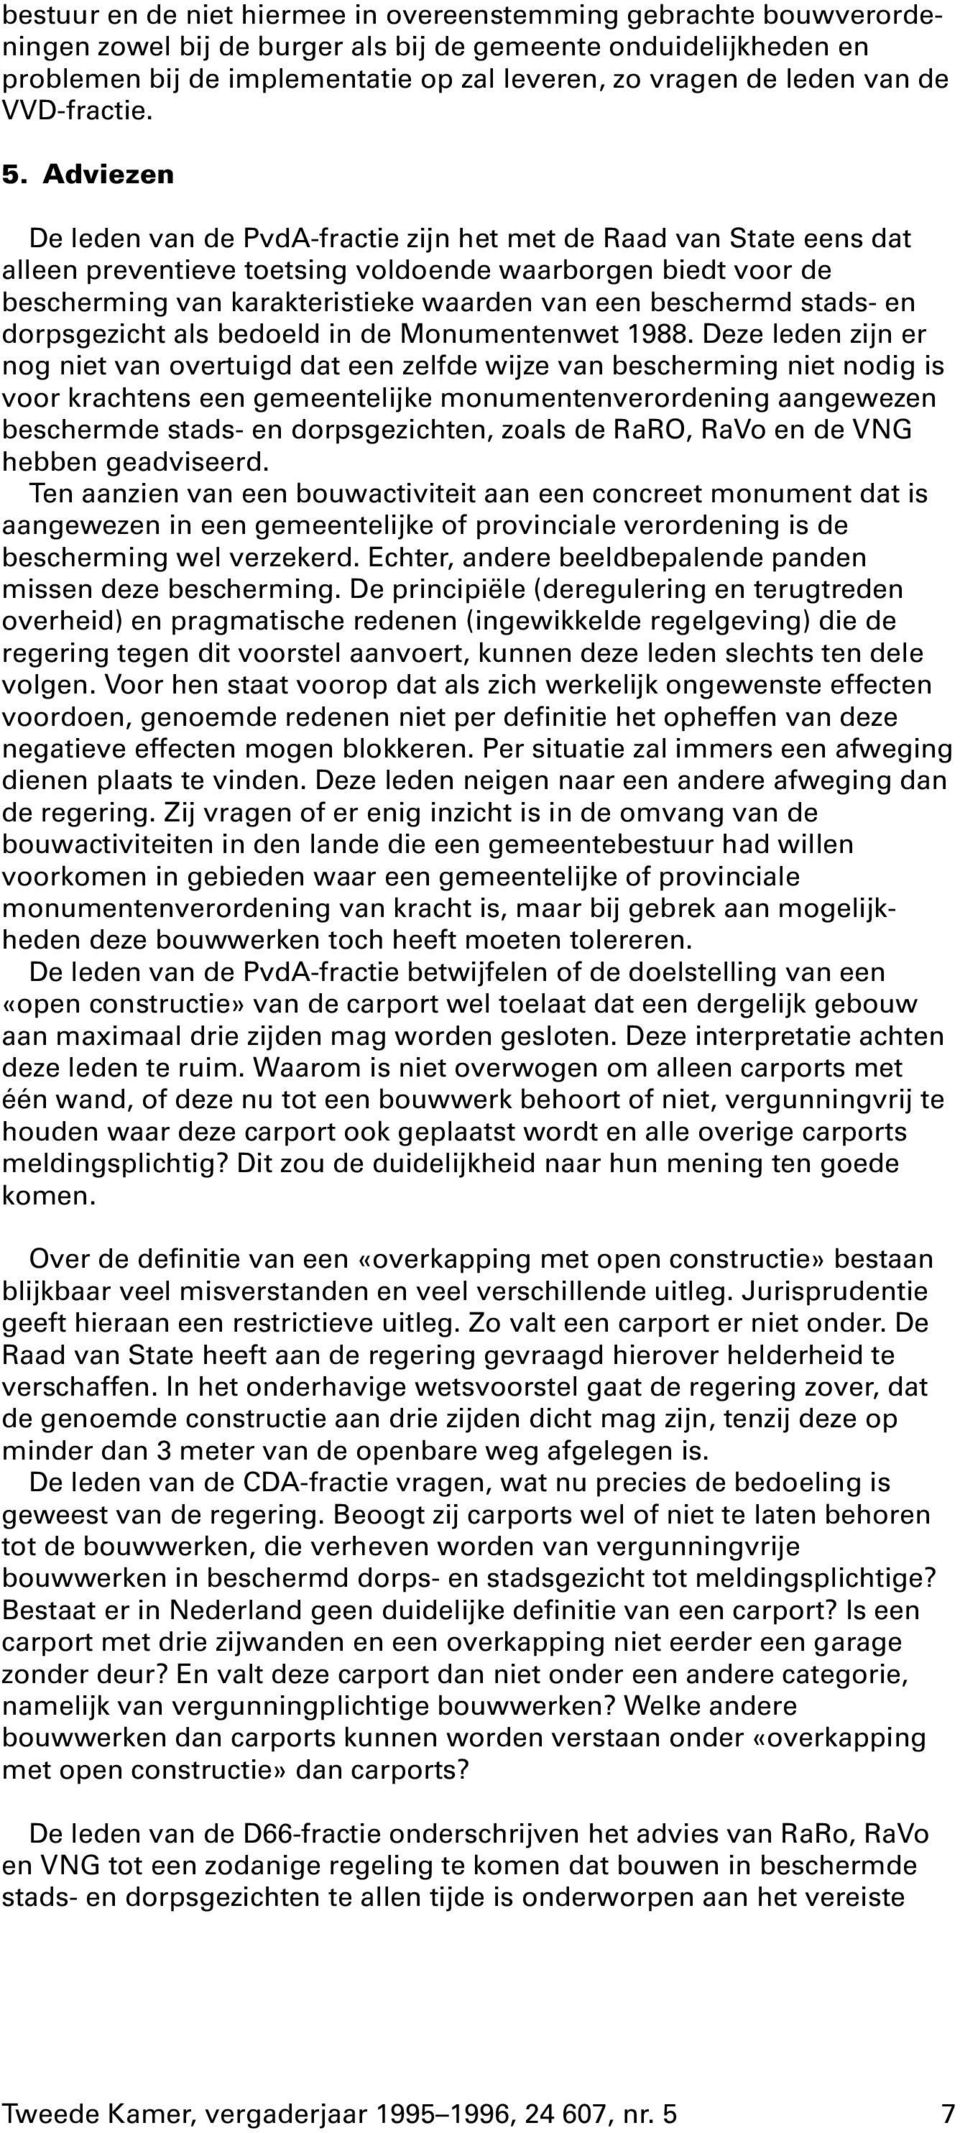 Adviezen De leden van de PvdA-fractie zijn het met de Raad van State eens dat alleen preventieve toetsing voldoende waarborgen biedt voor de bescherming van karakteristieke waarden van een beschermd